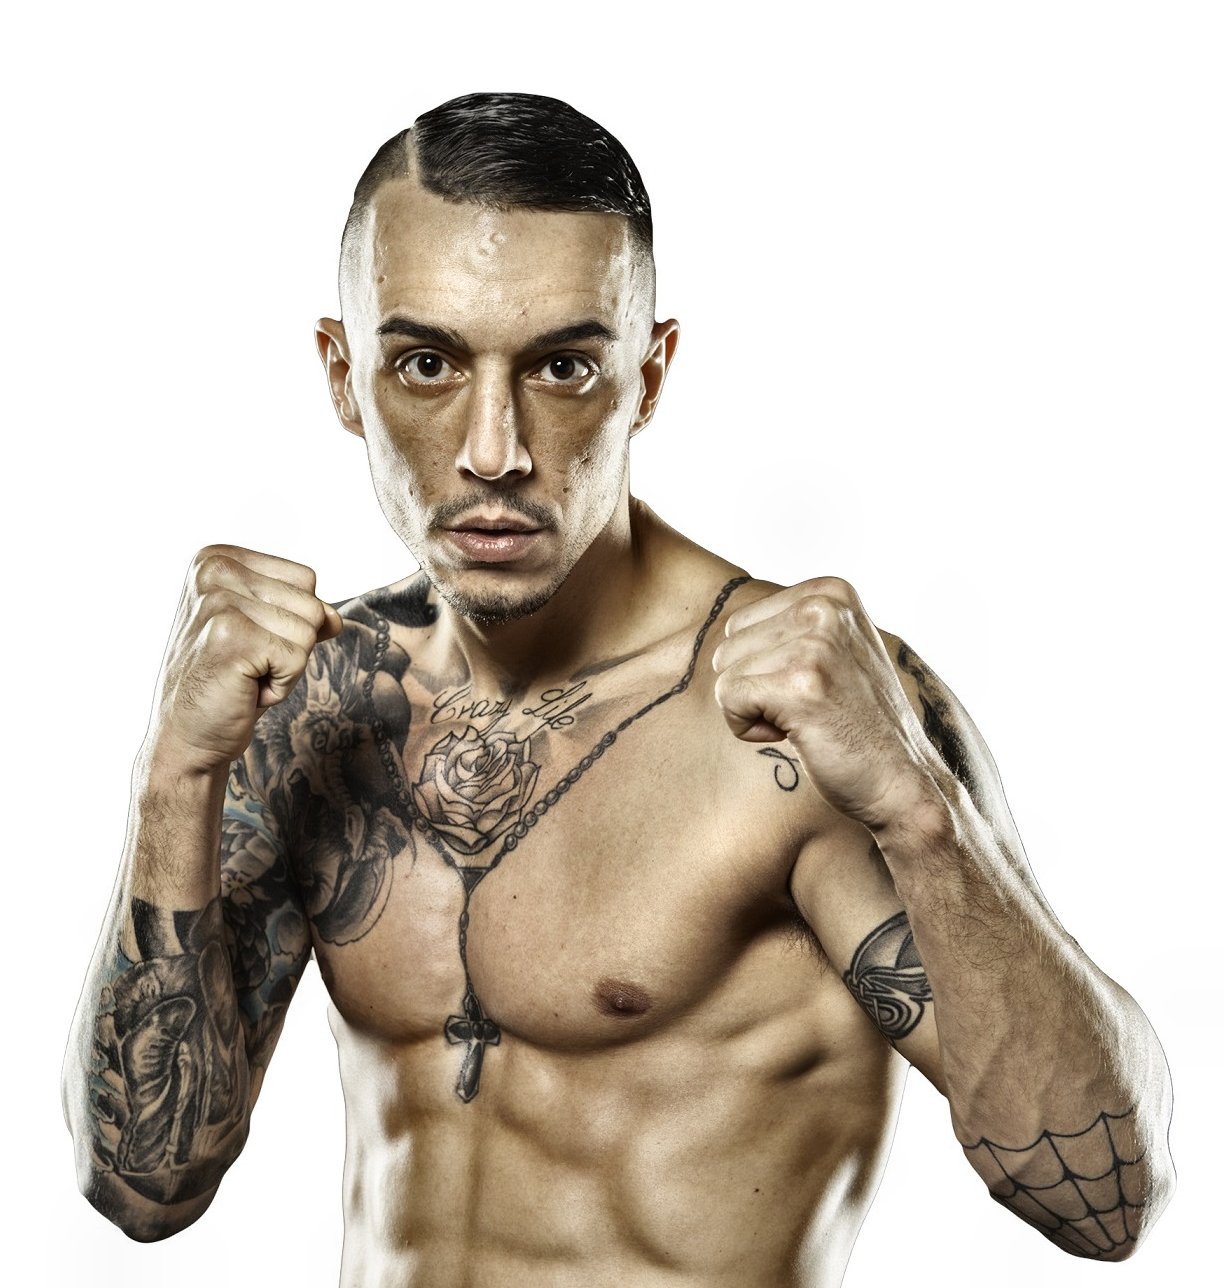 El boxeador profesional Fran Suarez, rival de Natxo Mendoza en Vitoria-Gasteiz el próximo 27 de enero